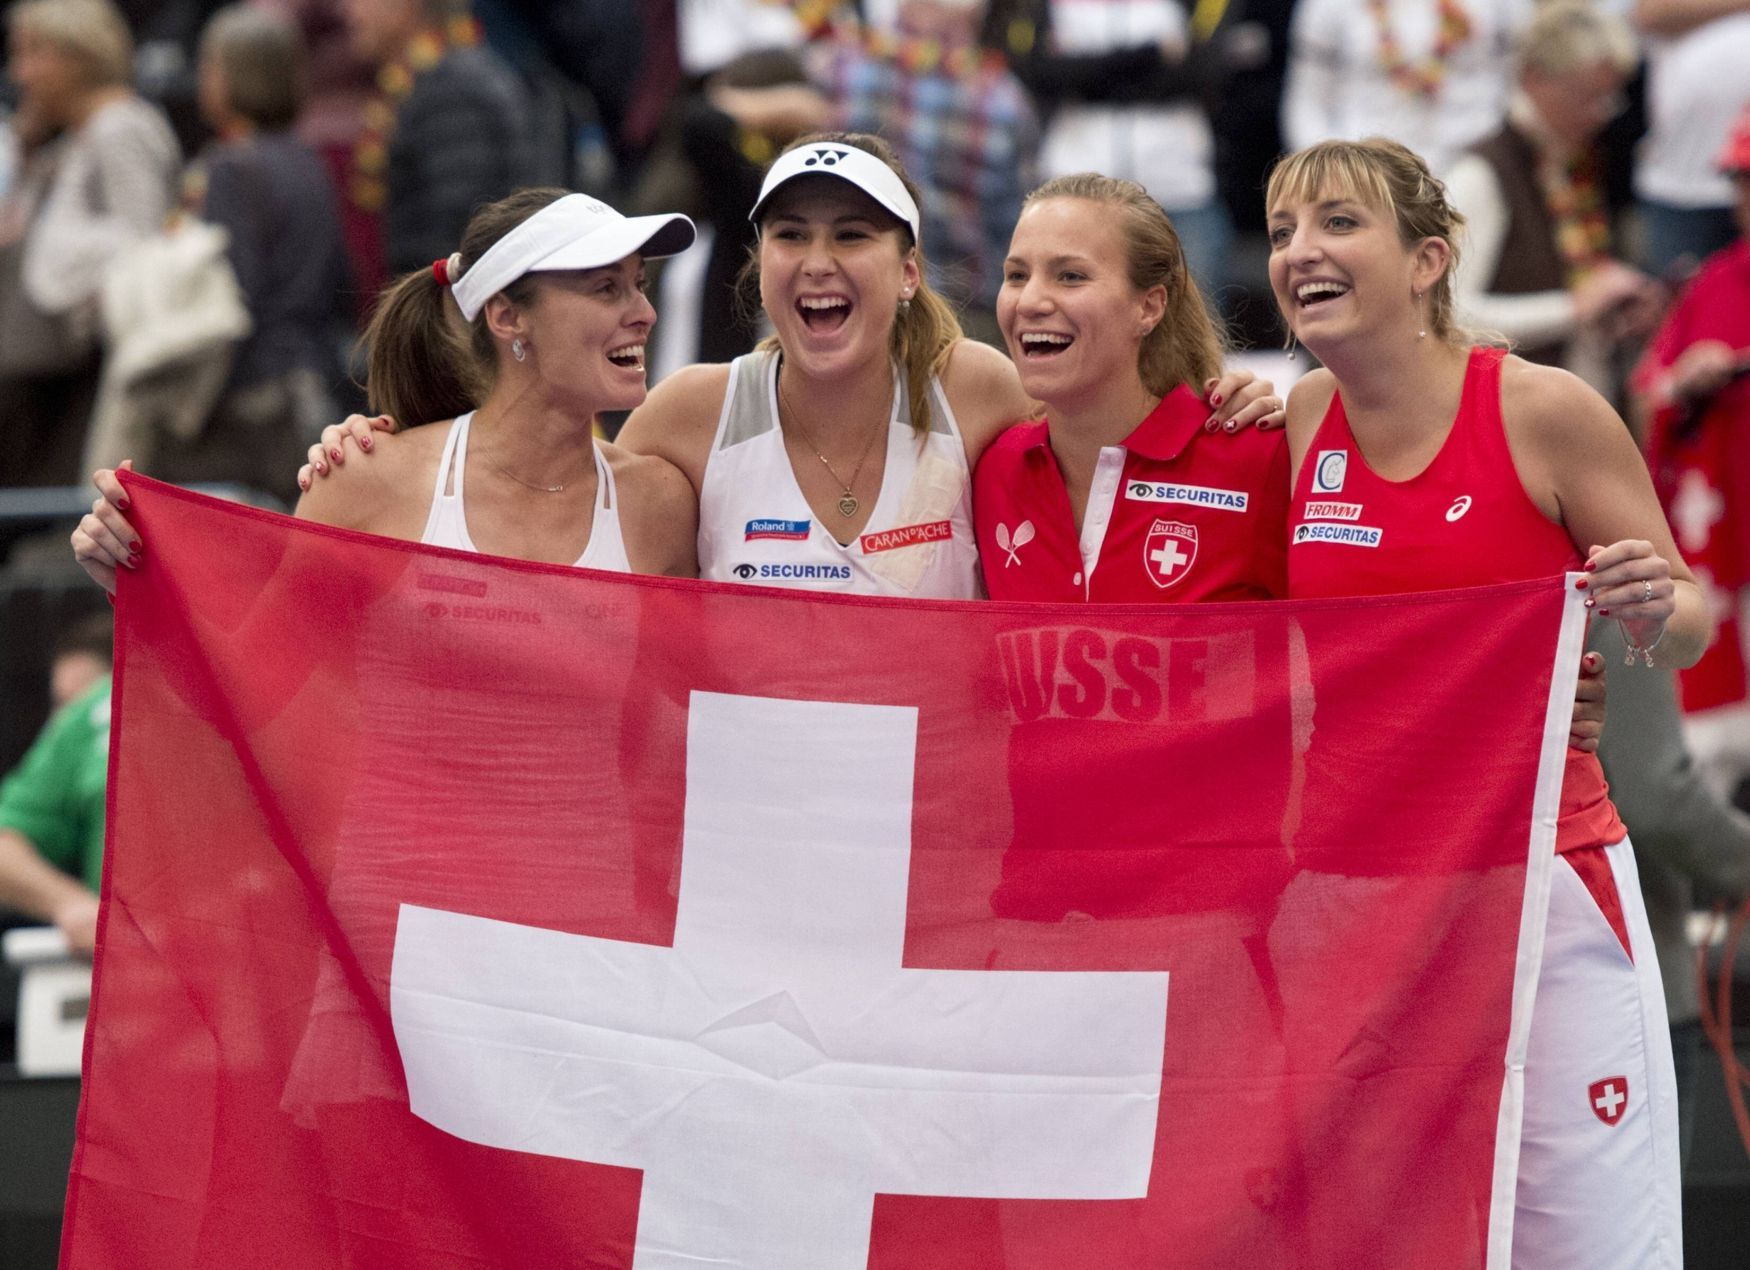 Fed Cup, Švýcarsko - Martina Hingisová, Belinda Bencicová, Viktorija Golubicová a Timea Bacsinszká